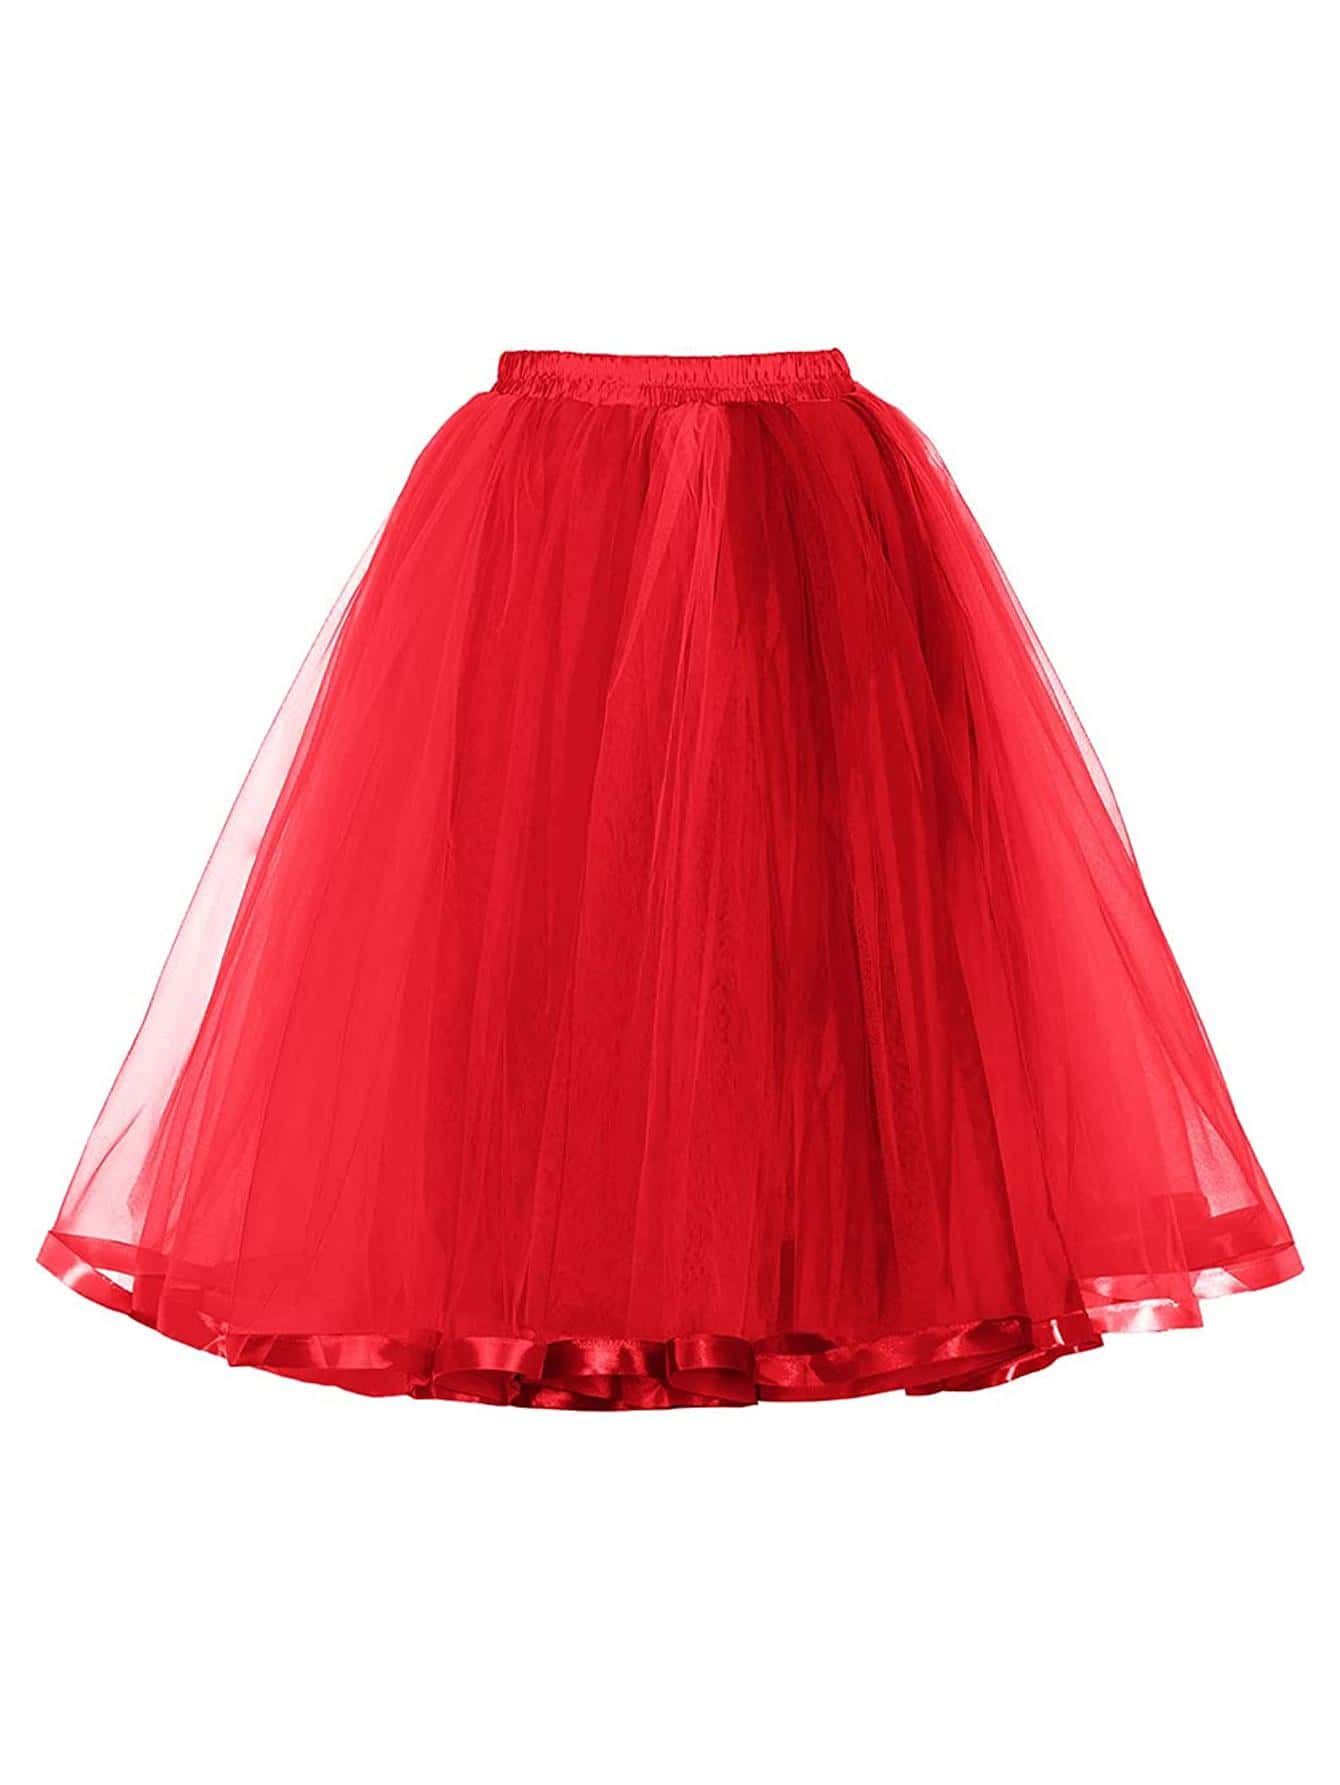 Women's Mid-length Red Underskirt Mesh Tulle Skirt With Ribbon Edge Detail | SHEIN